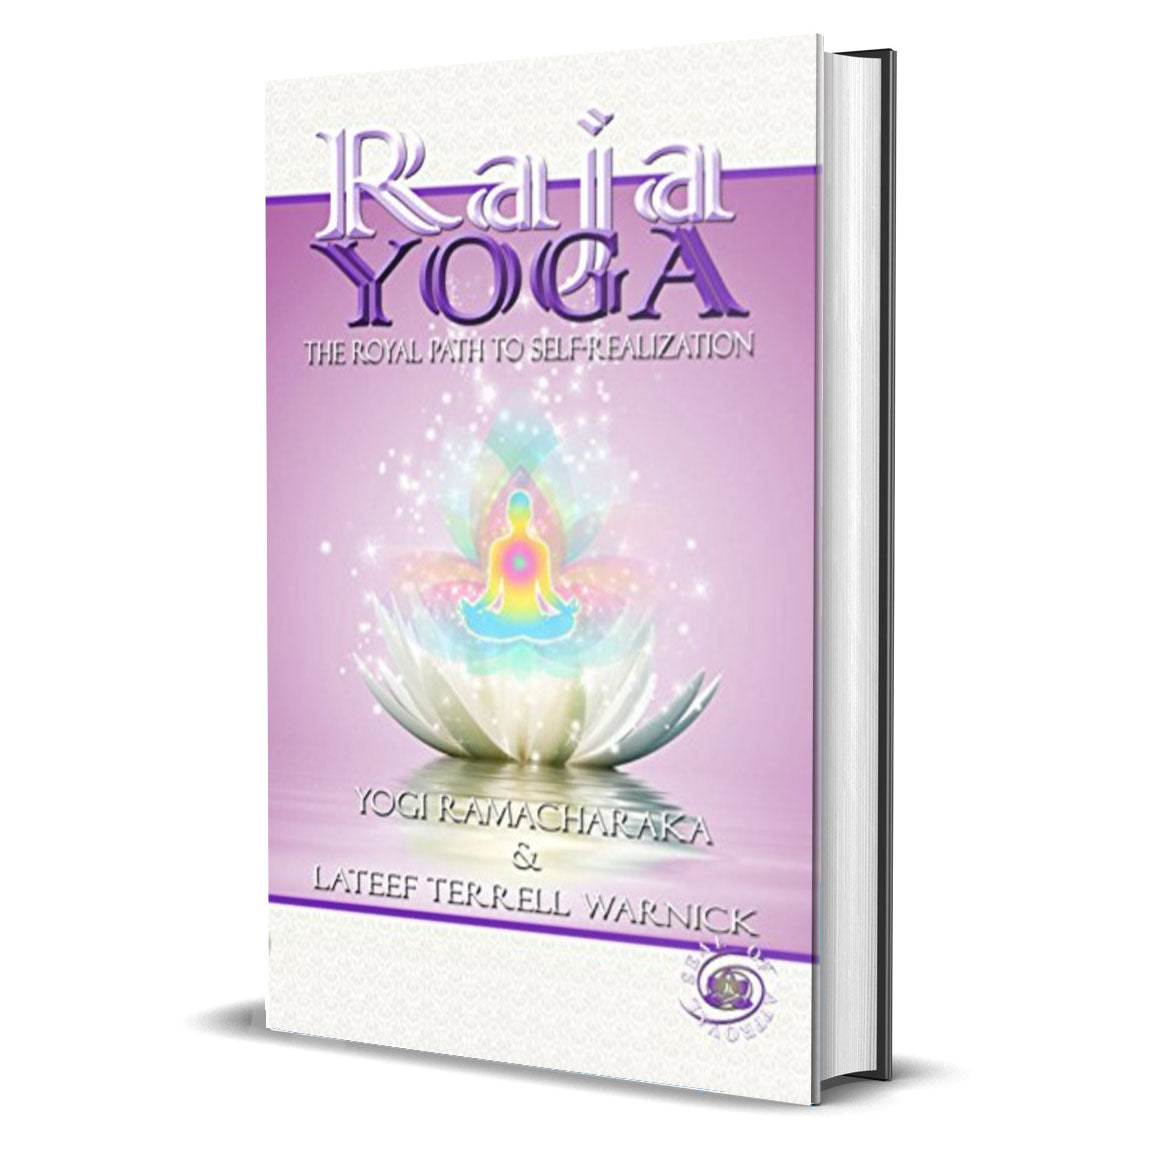 Raja Yoga by Ramacharaka